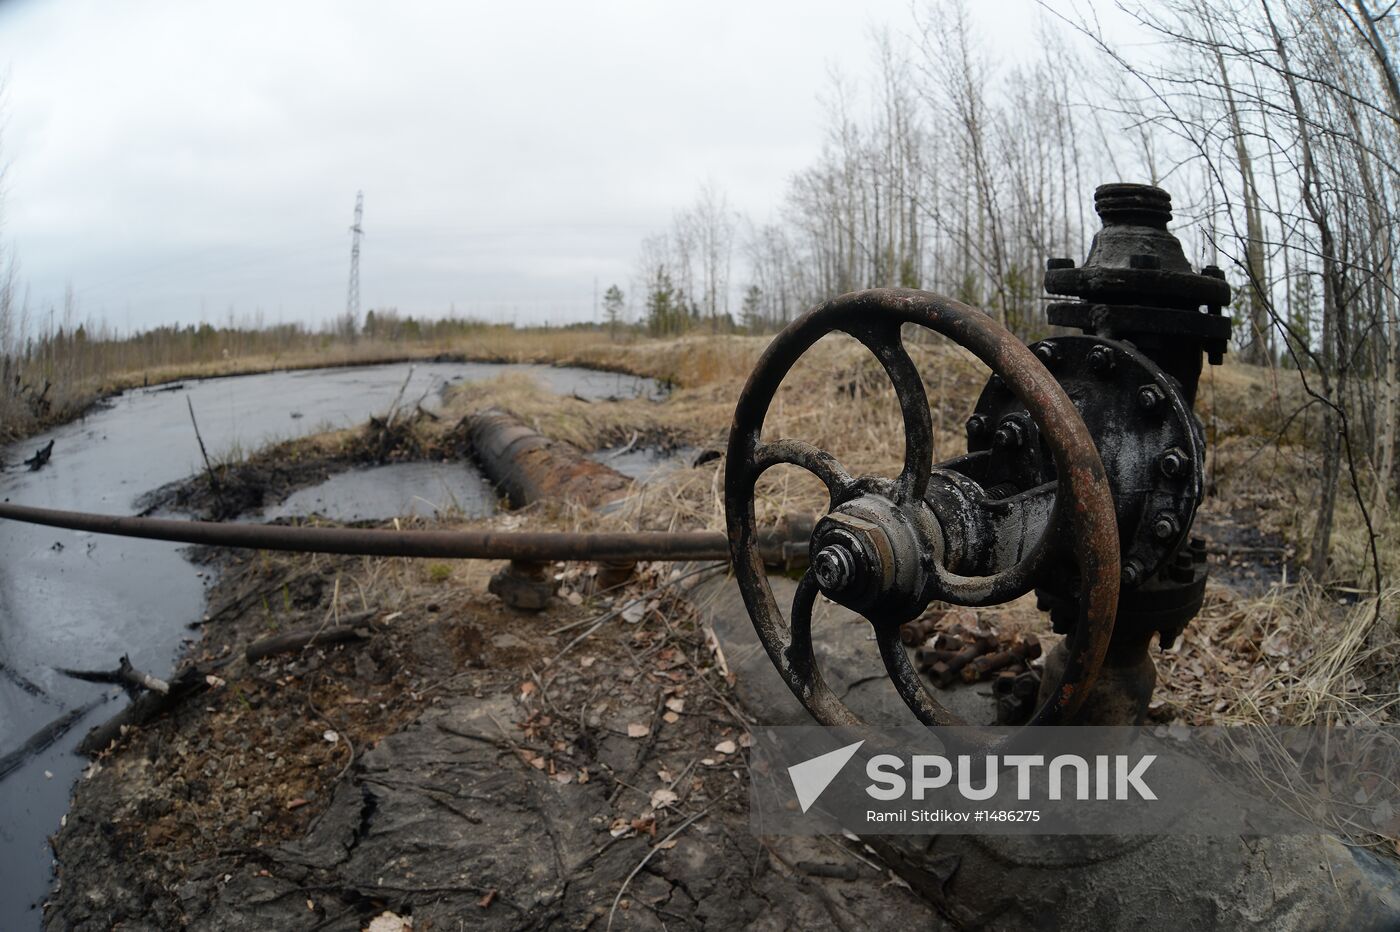 Oil spills at Mamontovskoye oil field in Khanty-Mansi Okrug